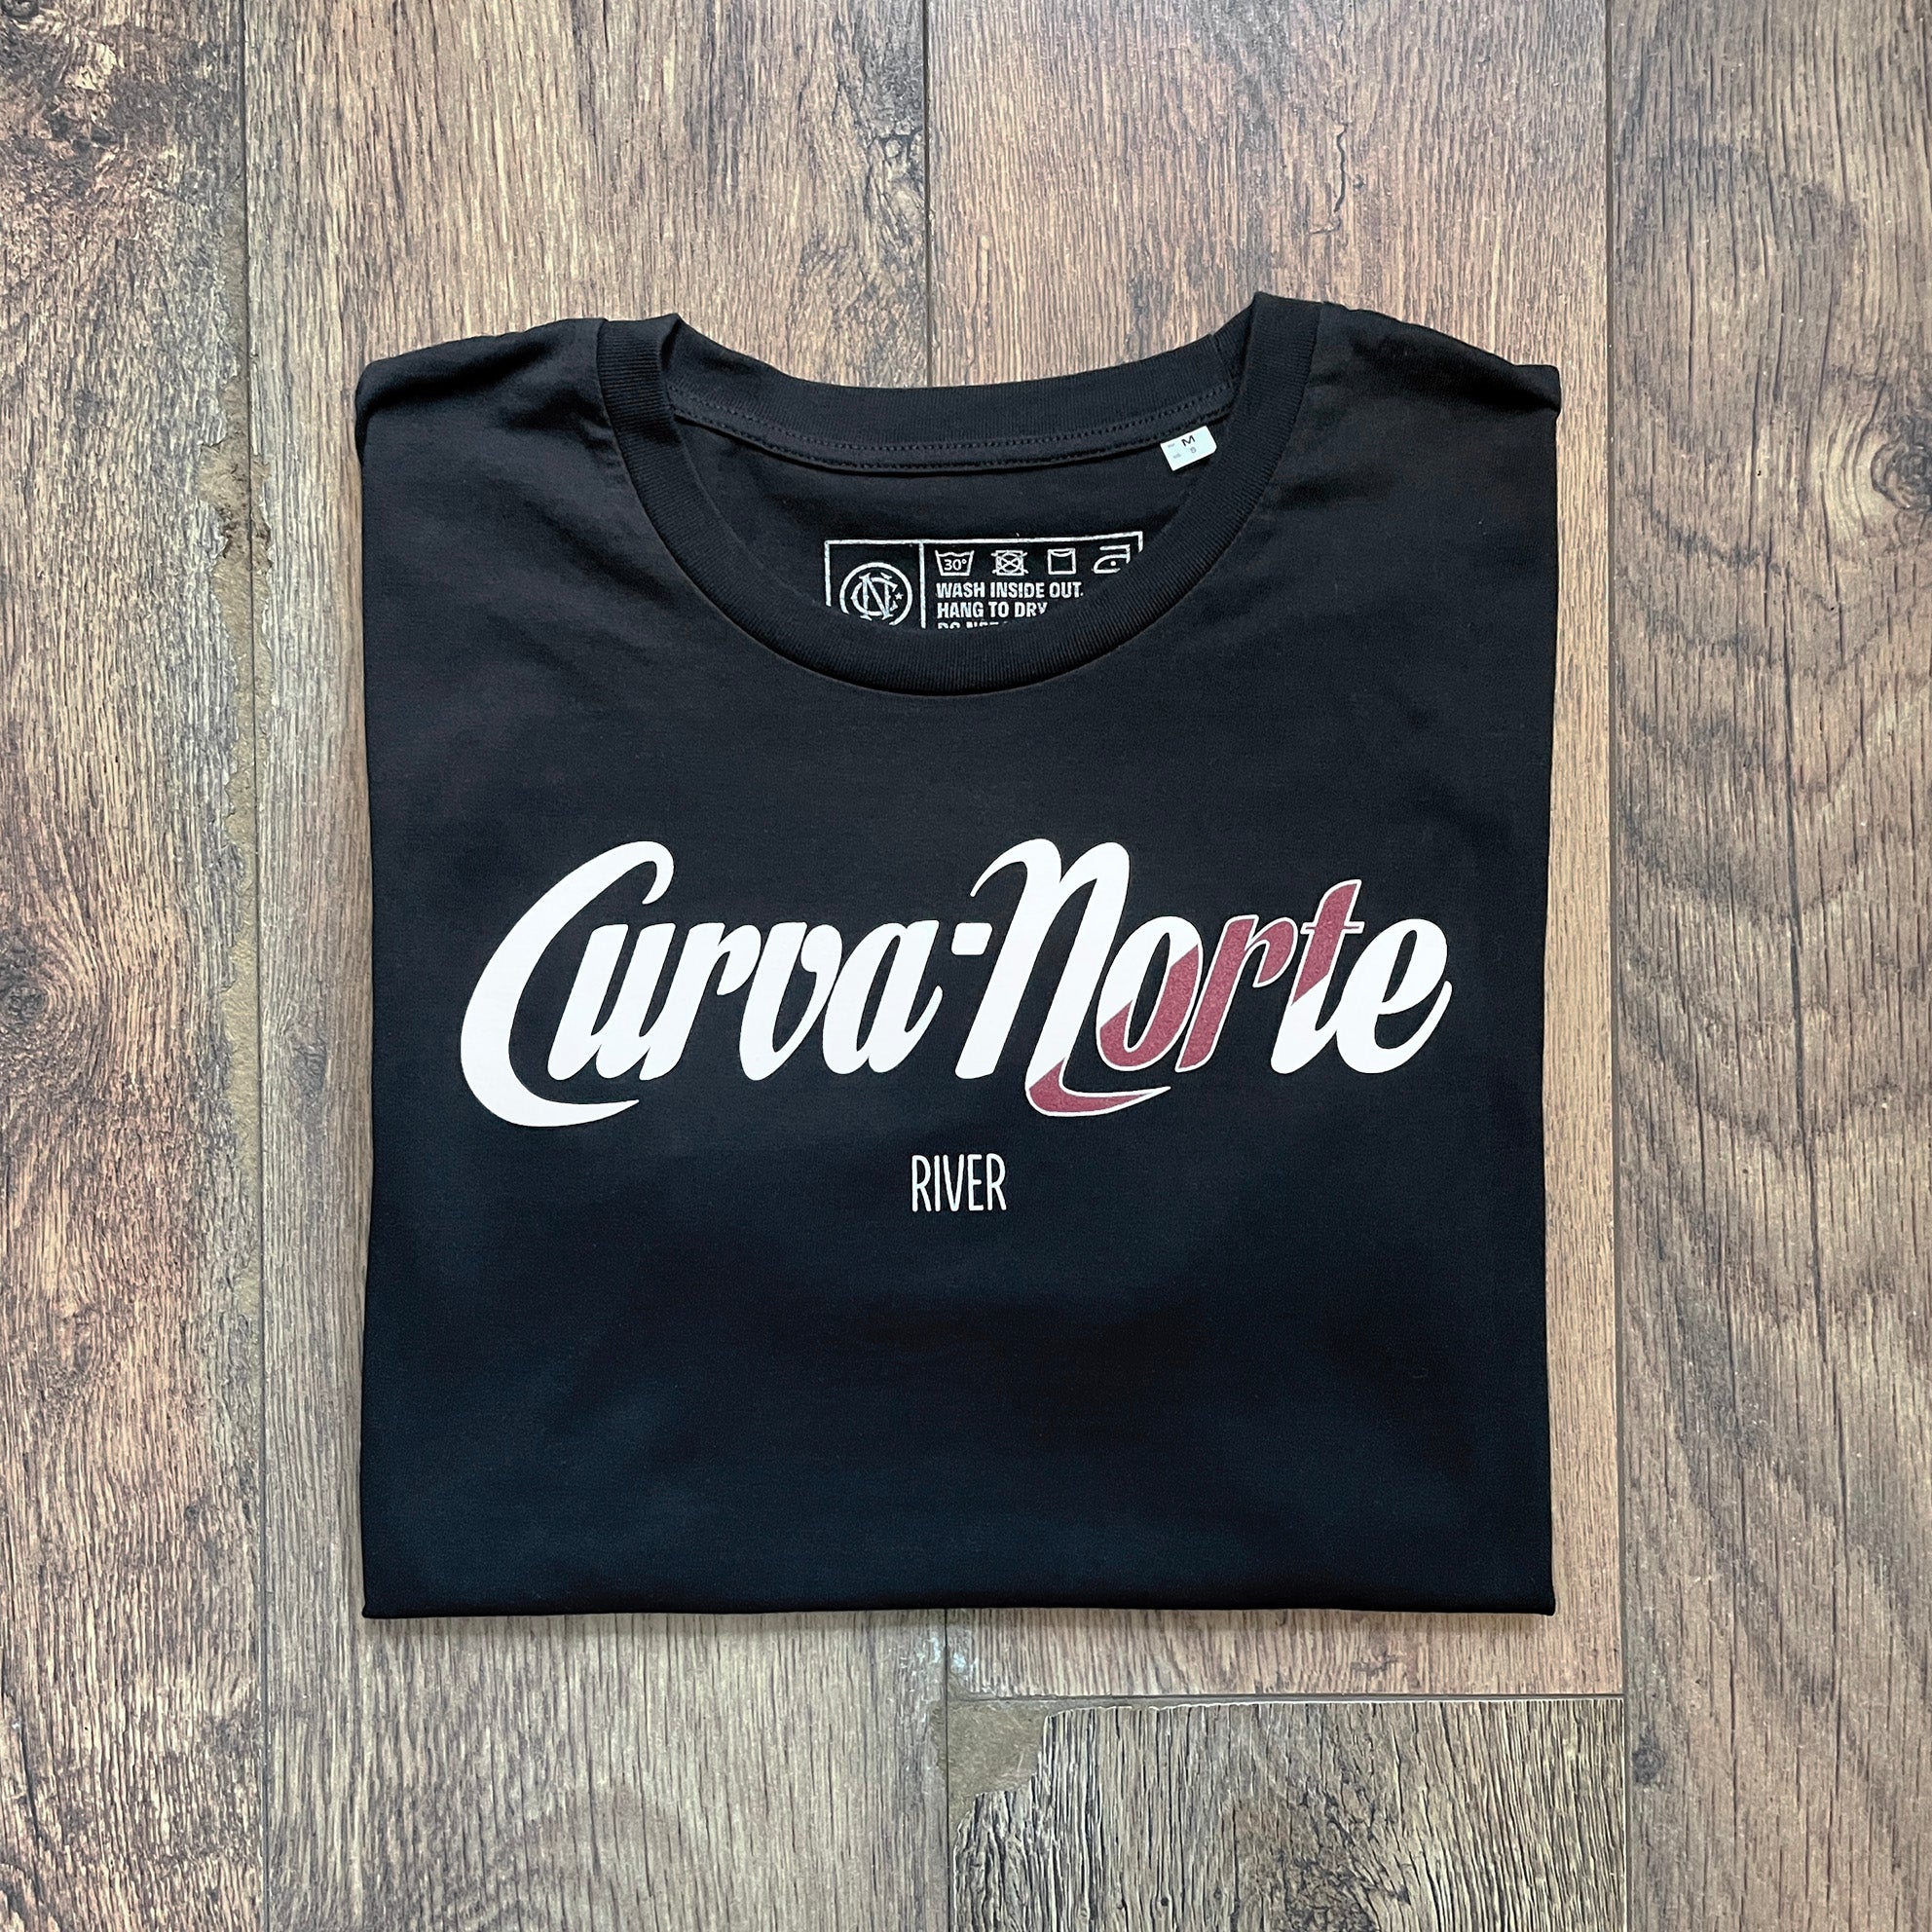 Curva Norte River T-shirt